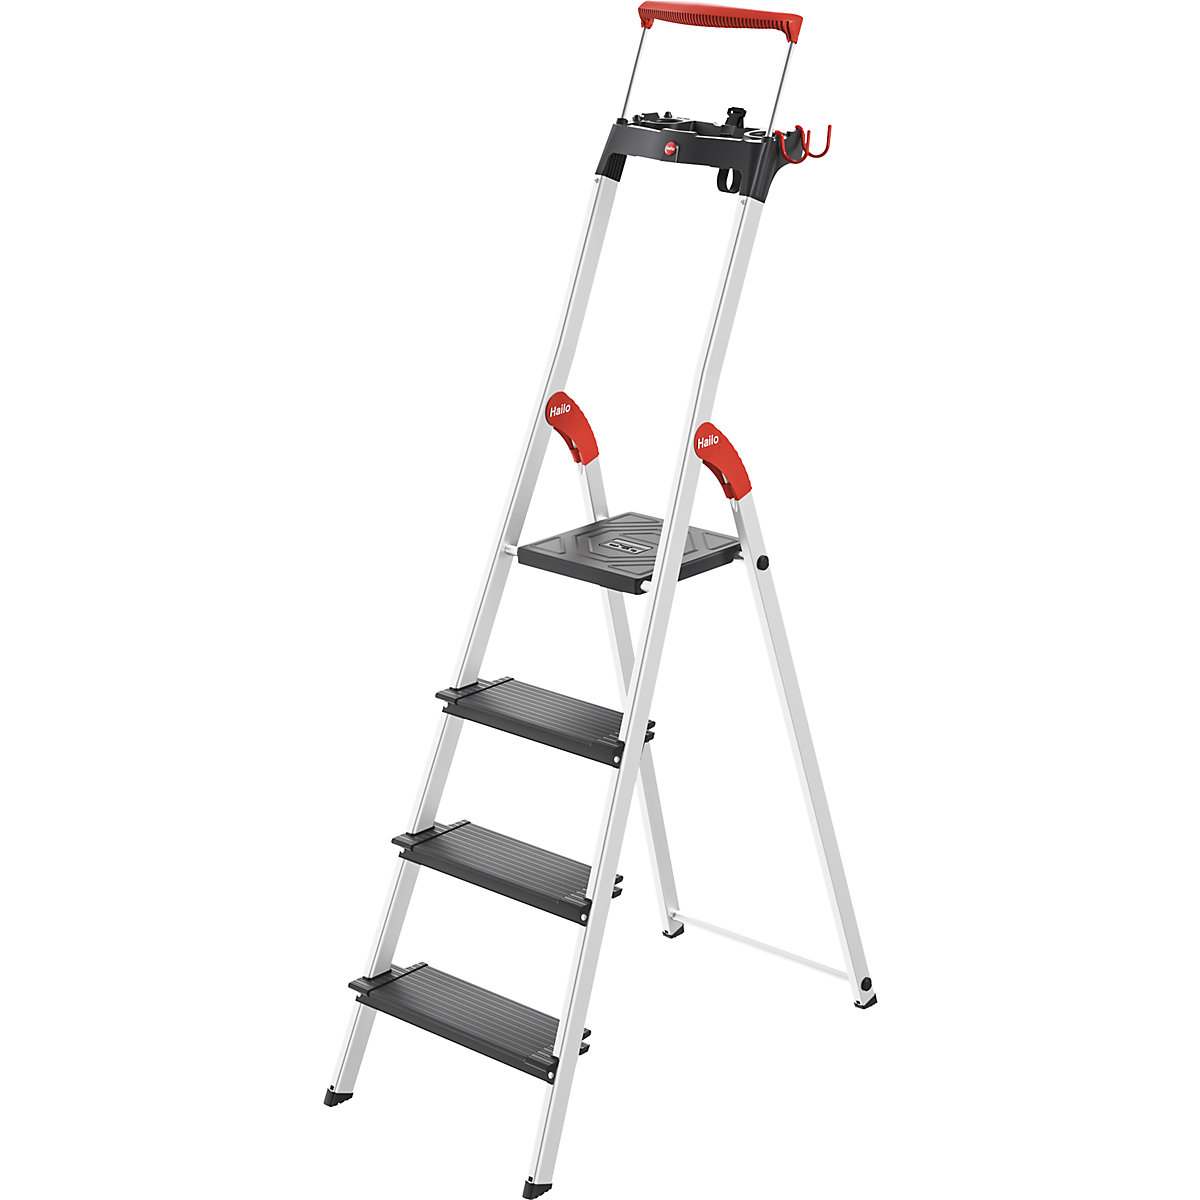 Varnostna lestev TopLine L100 – Hailo, nosilnost do 150 kg, 4 stopnice, od 2 kosov